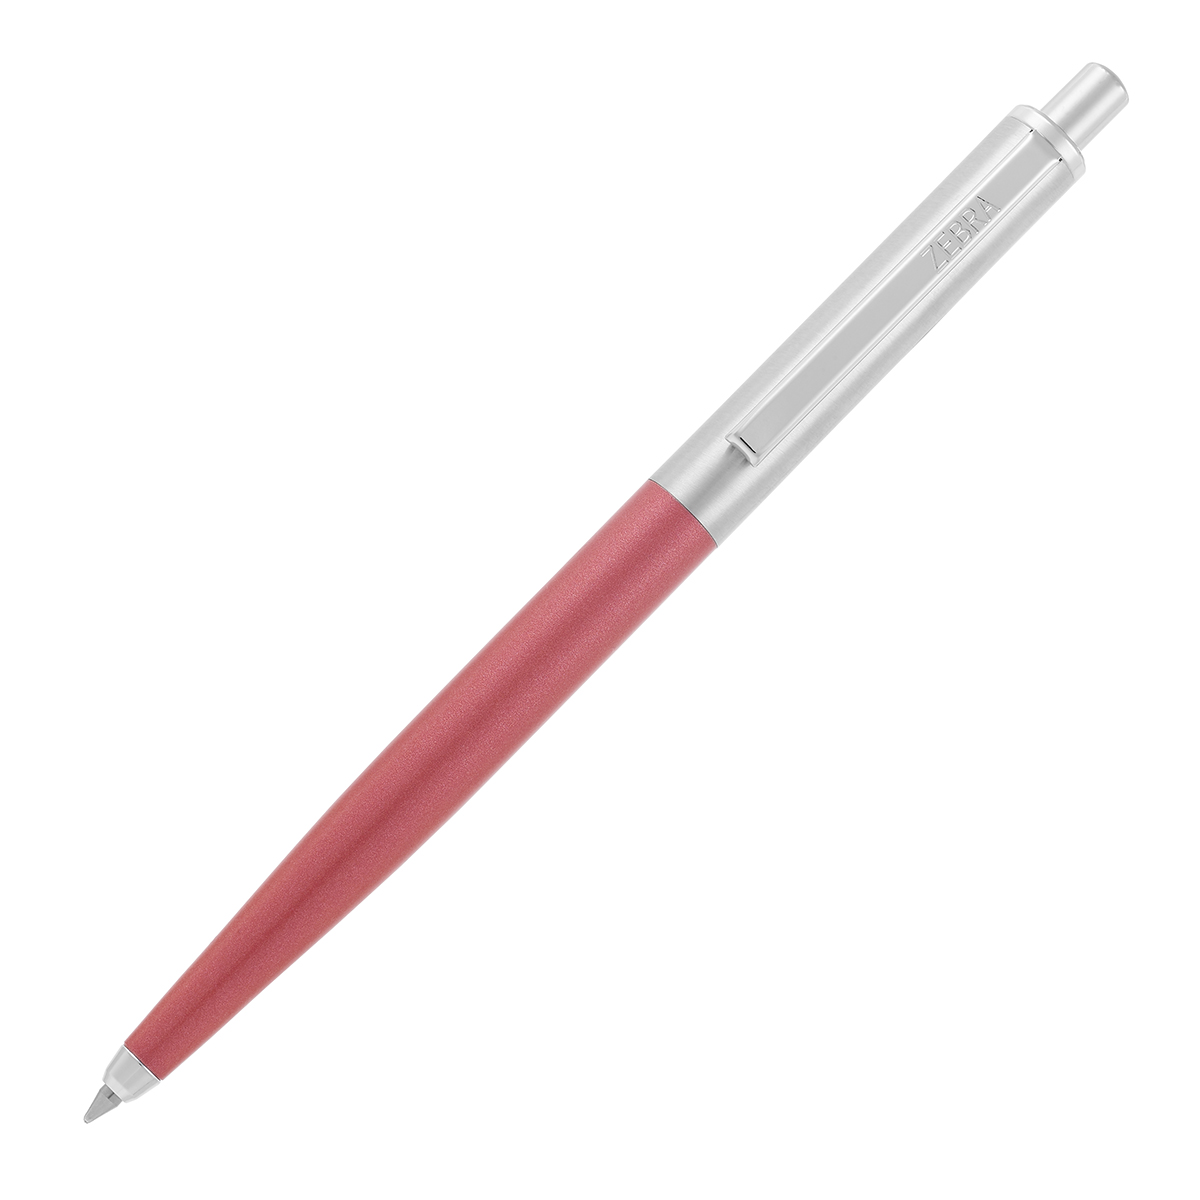 Kemični svinčnik  Zebra 901 0,7 moder izpis, srebrno rdeče telo